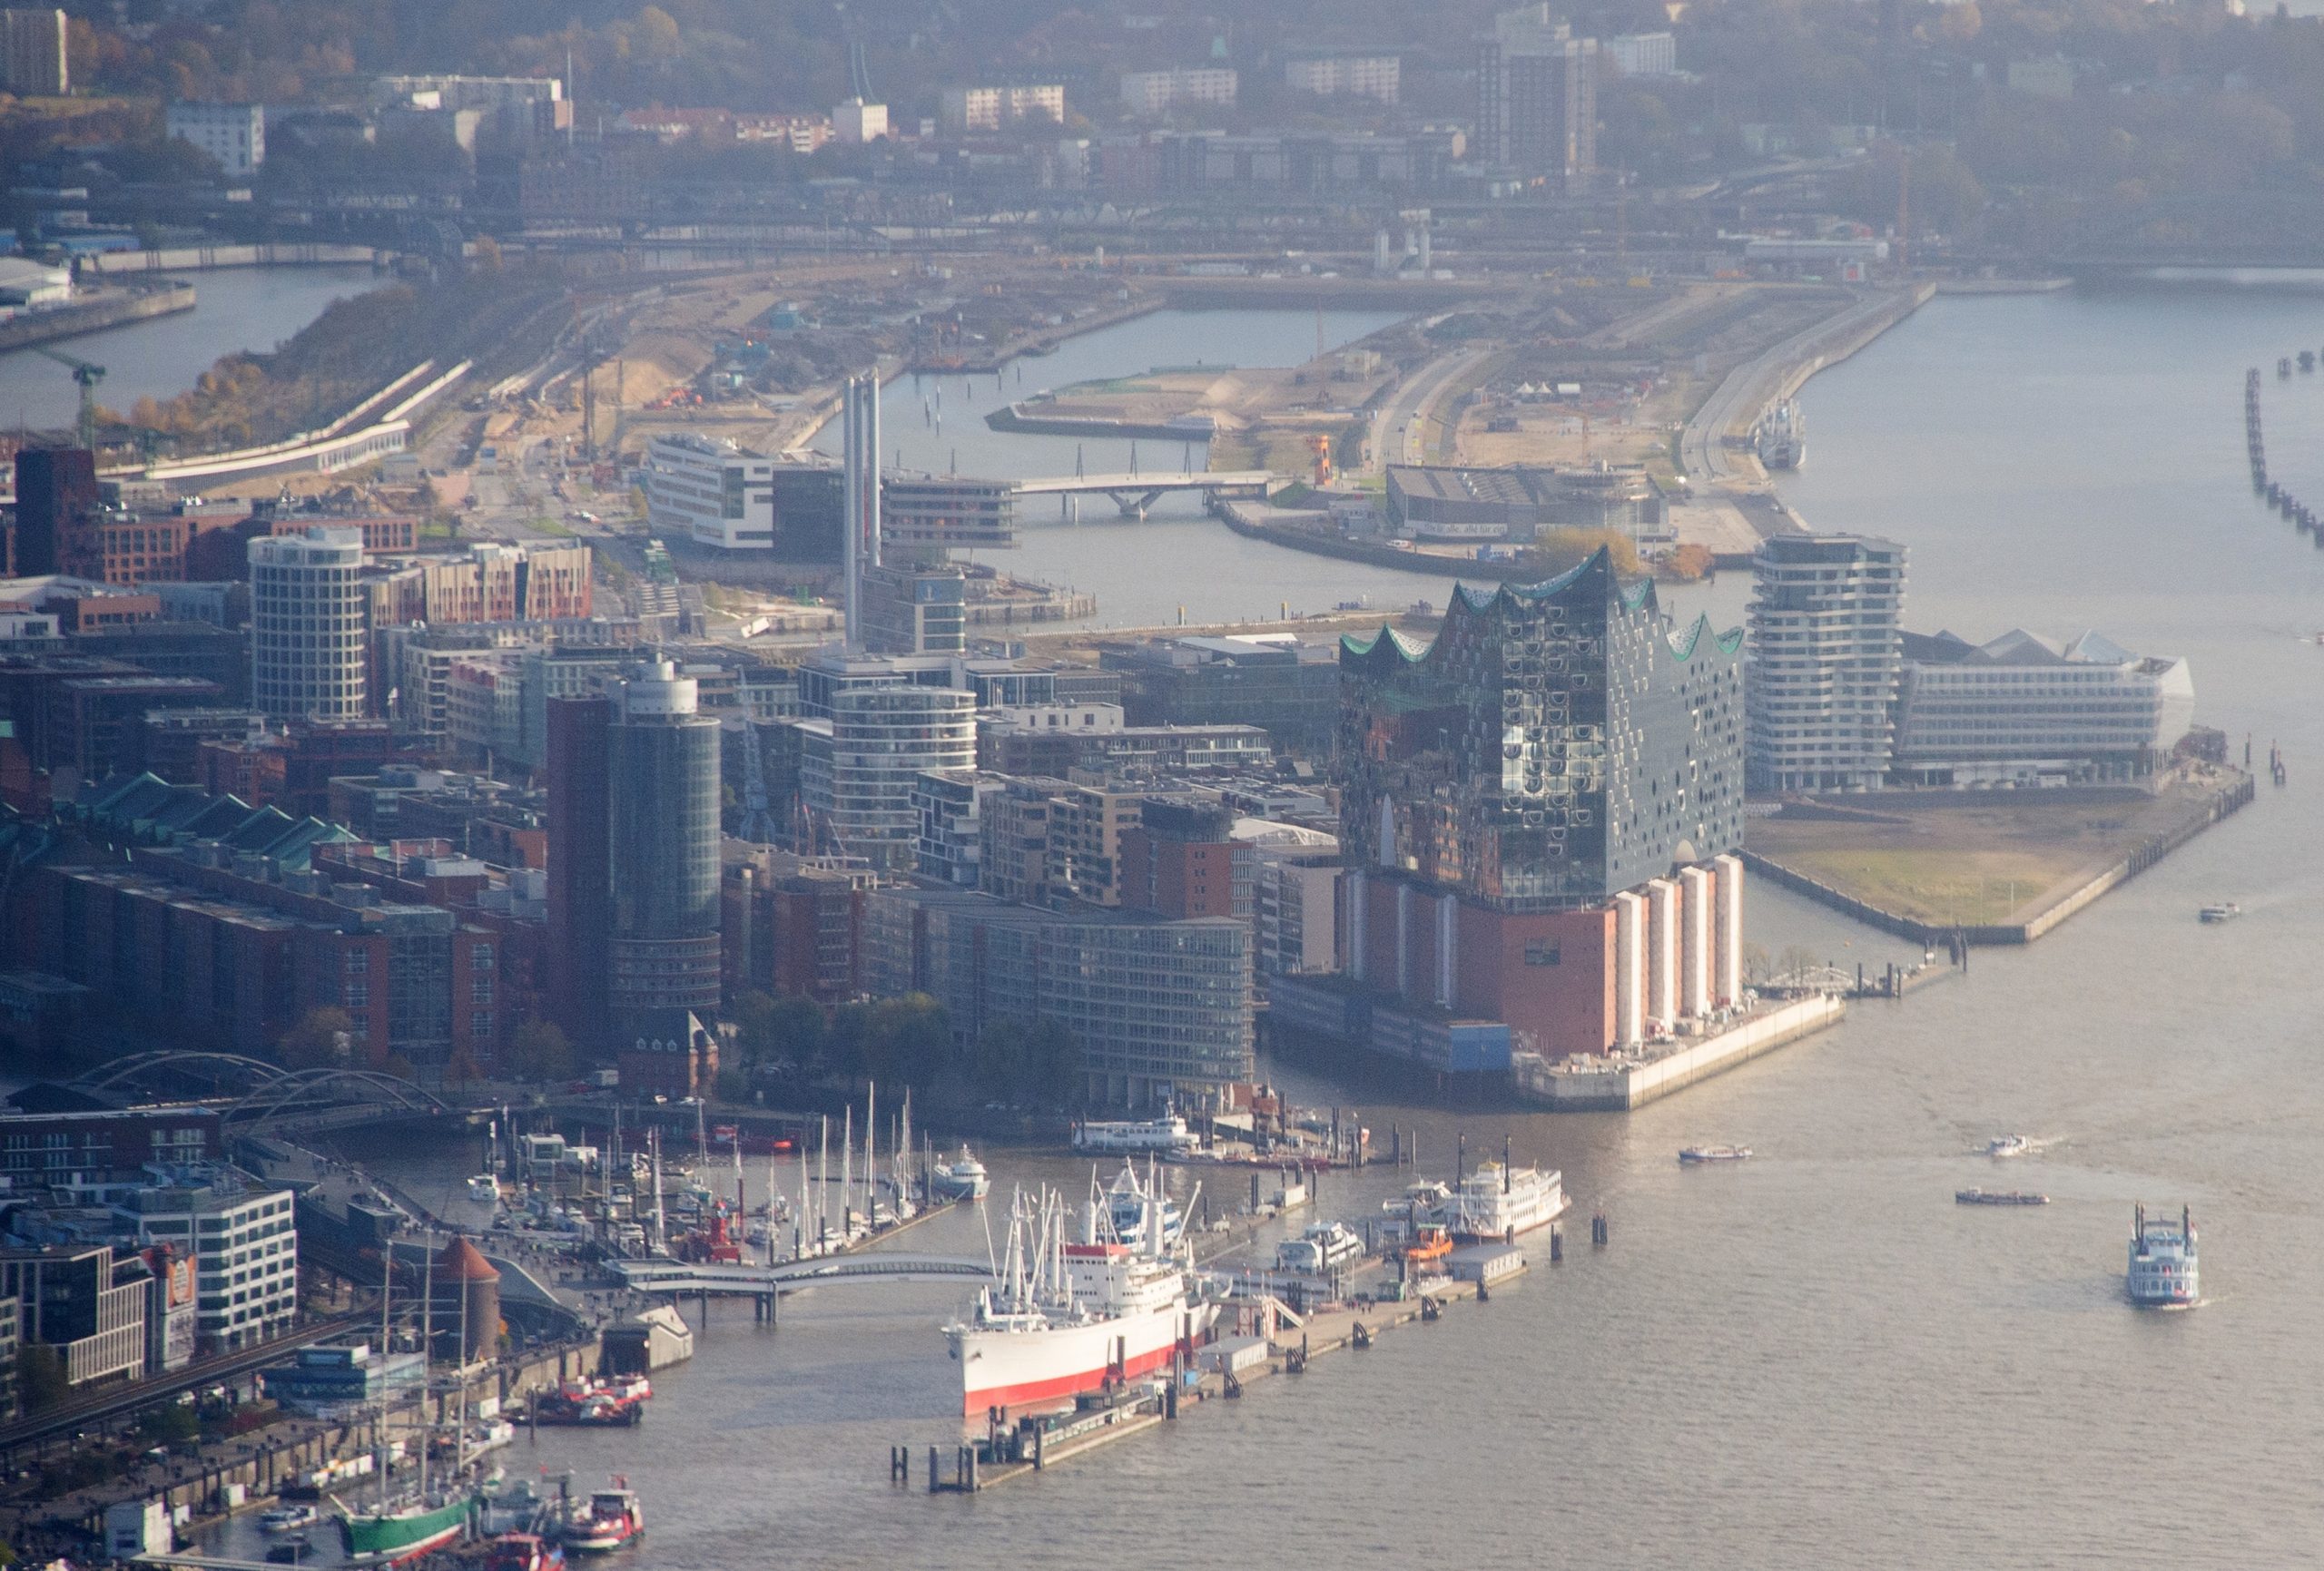 Blick auf den Hafen mit den Landungsbrücken (links), der Elbphilharmonie (Mitte) und dem Stadtteil HafenCity (oben).